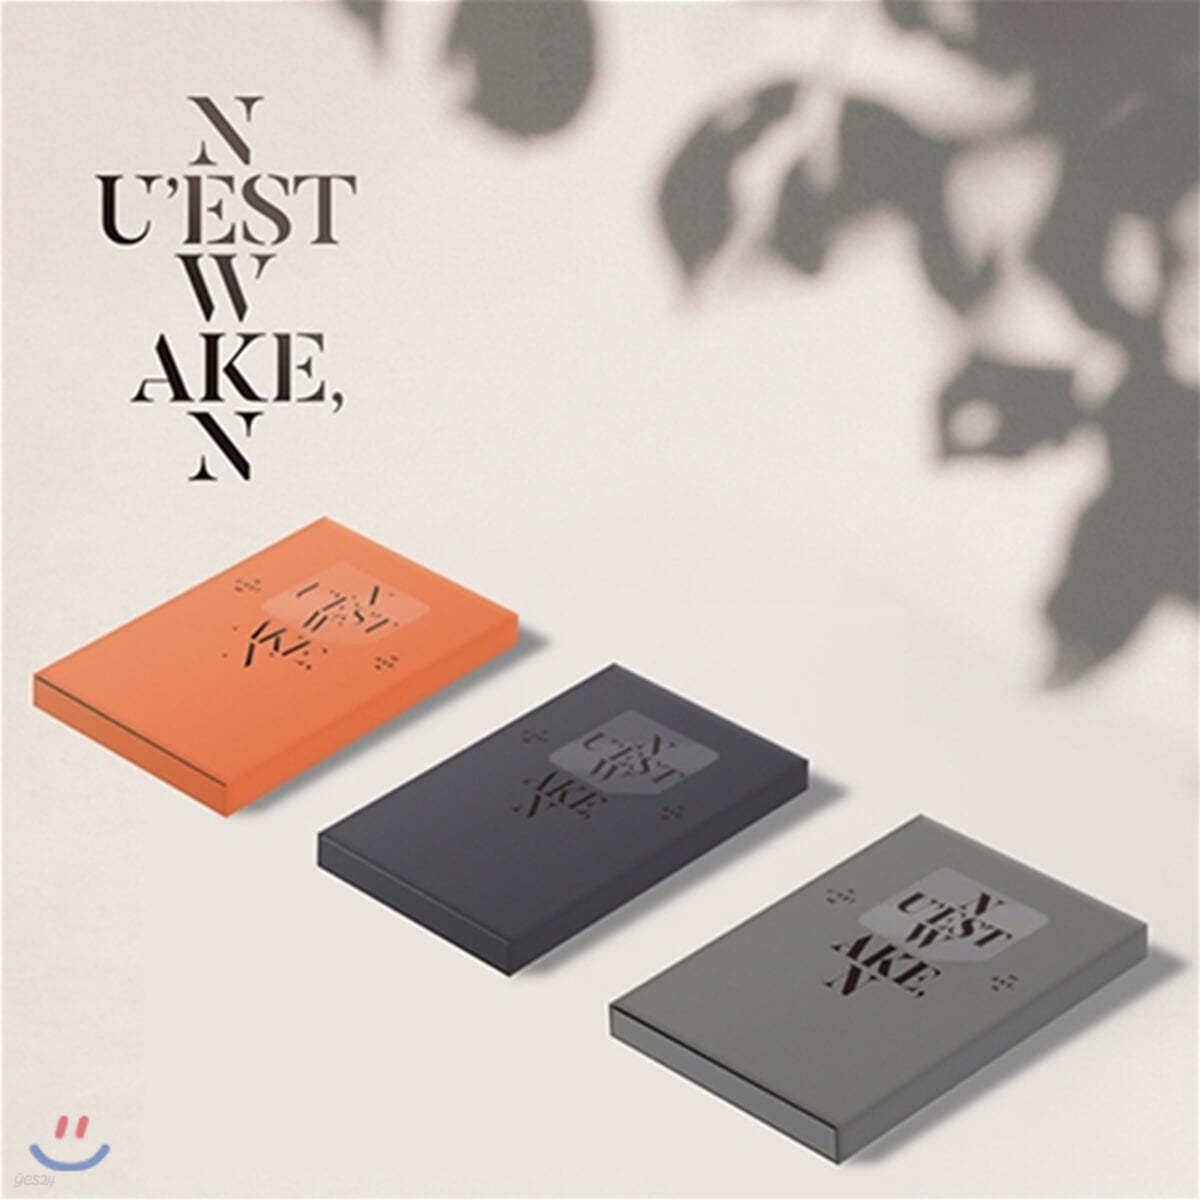 뉴이스트 W (NU’EST W) - [WAKE,N] [스마트 뮤직 앨범(키노 앨범)] (Ver.1/2/3 중 랜덤발송)